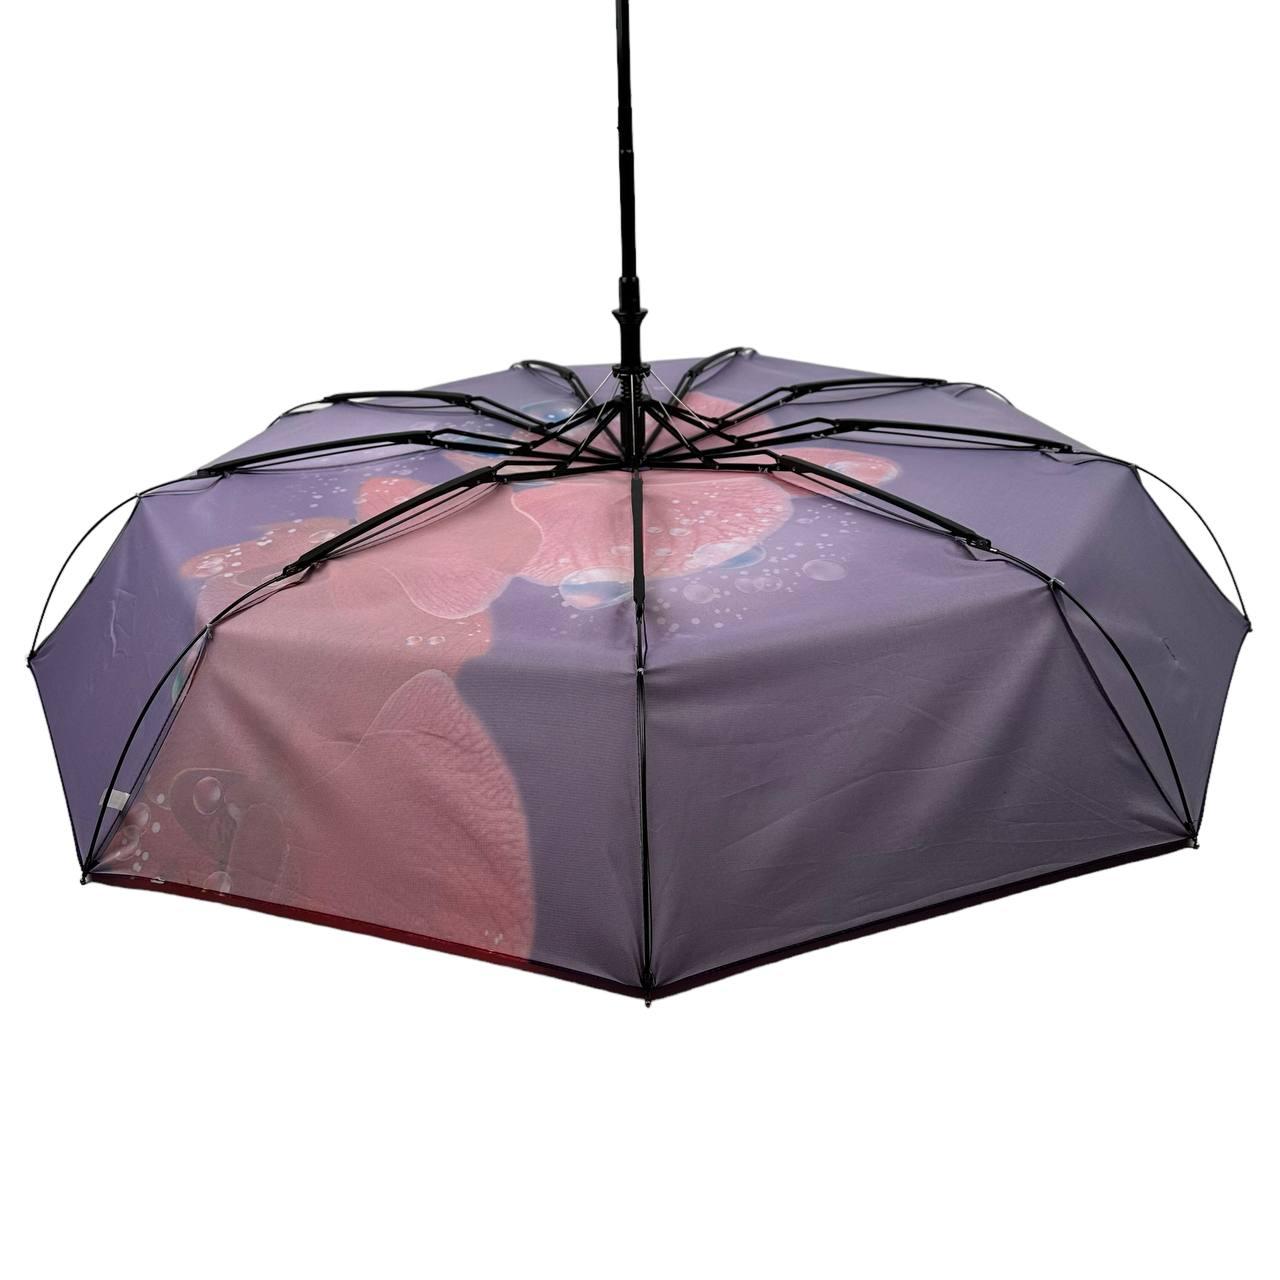 Женский складной зонтик полный автомат The Best 102 см фиолетовый - фото 5